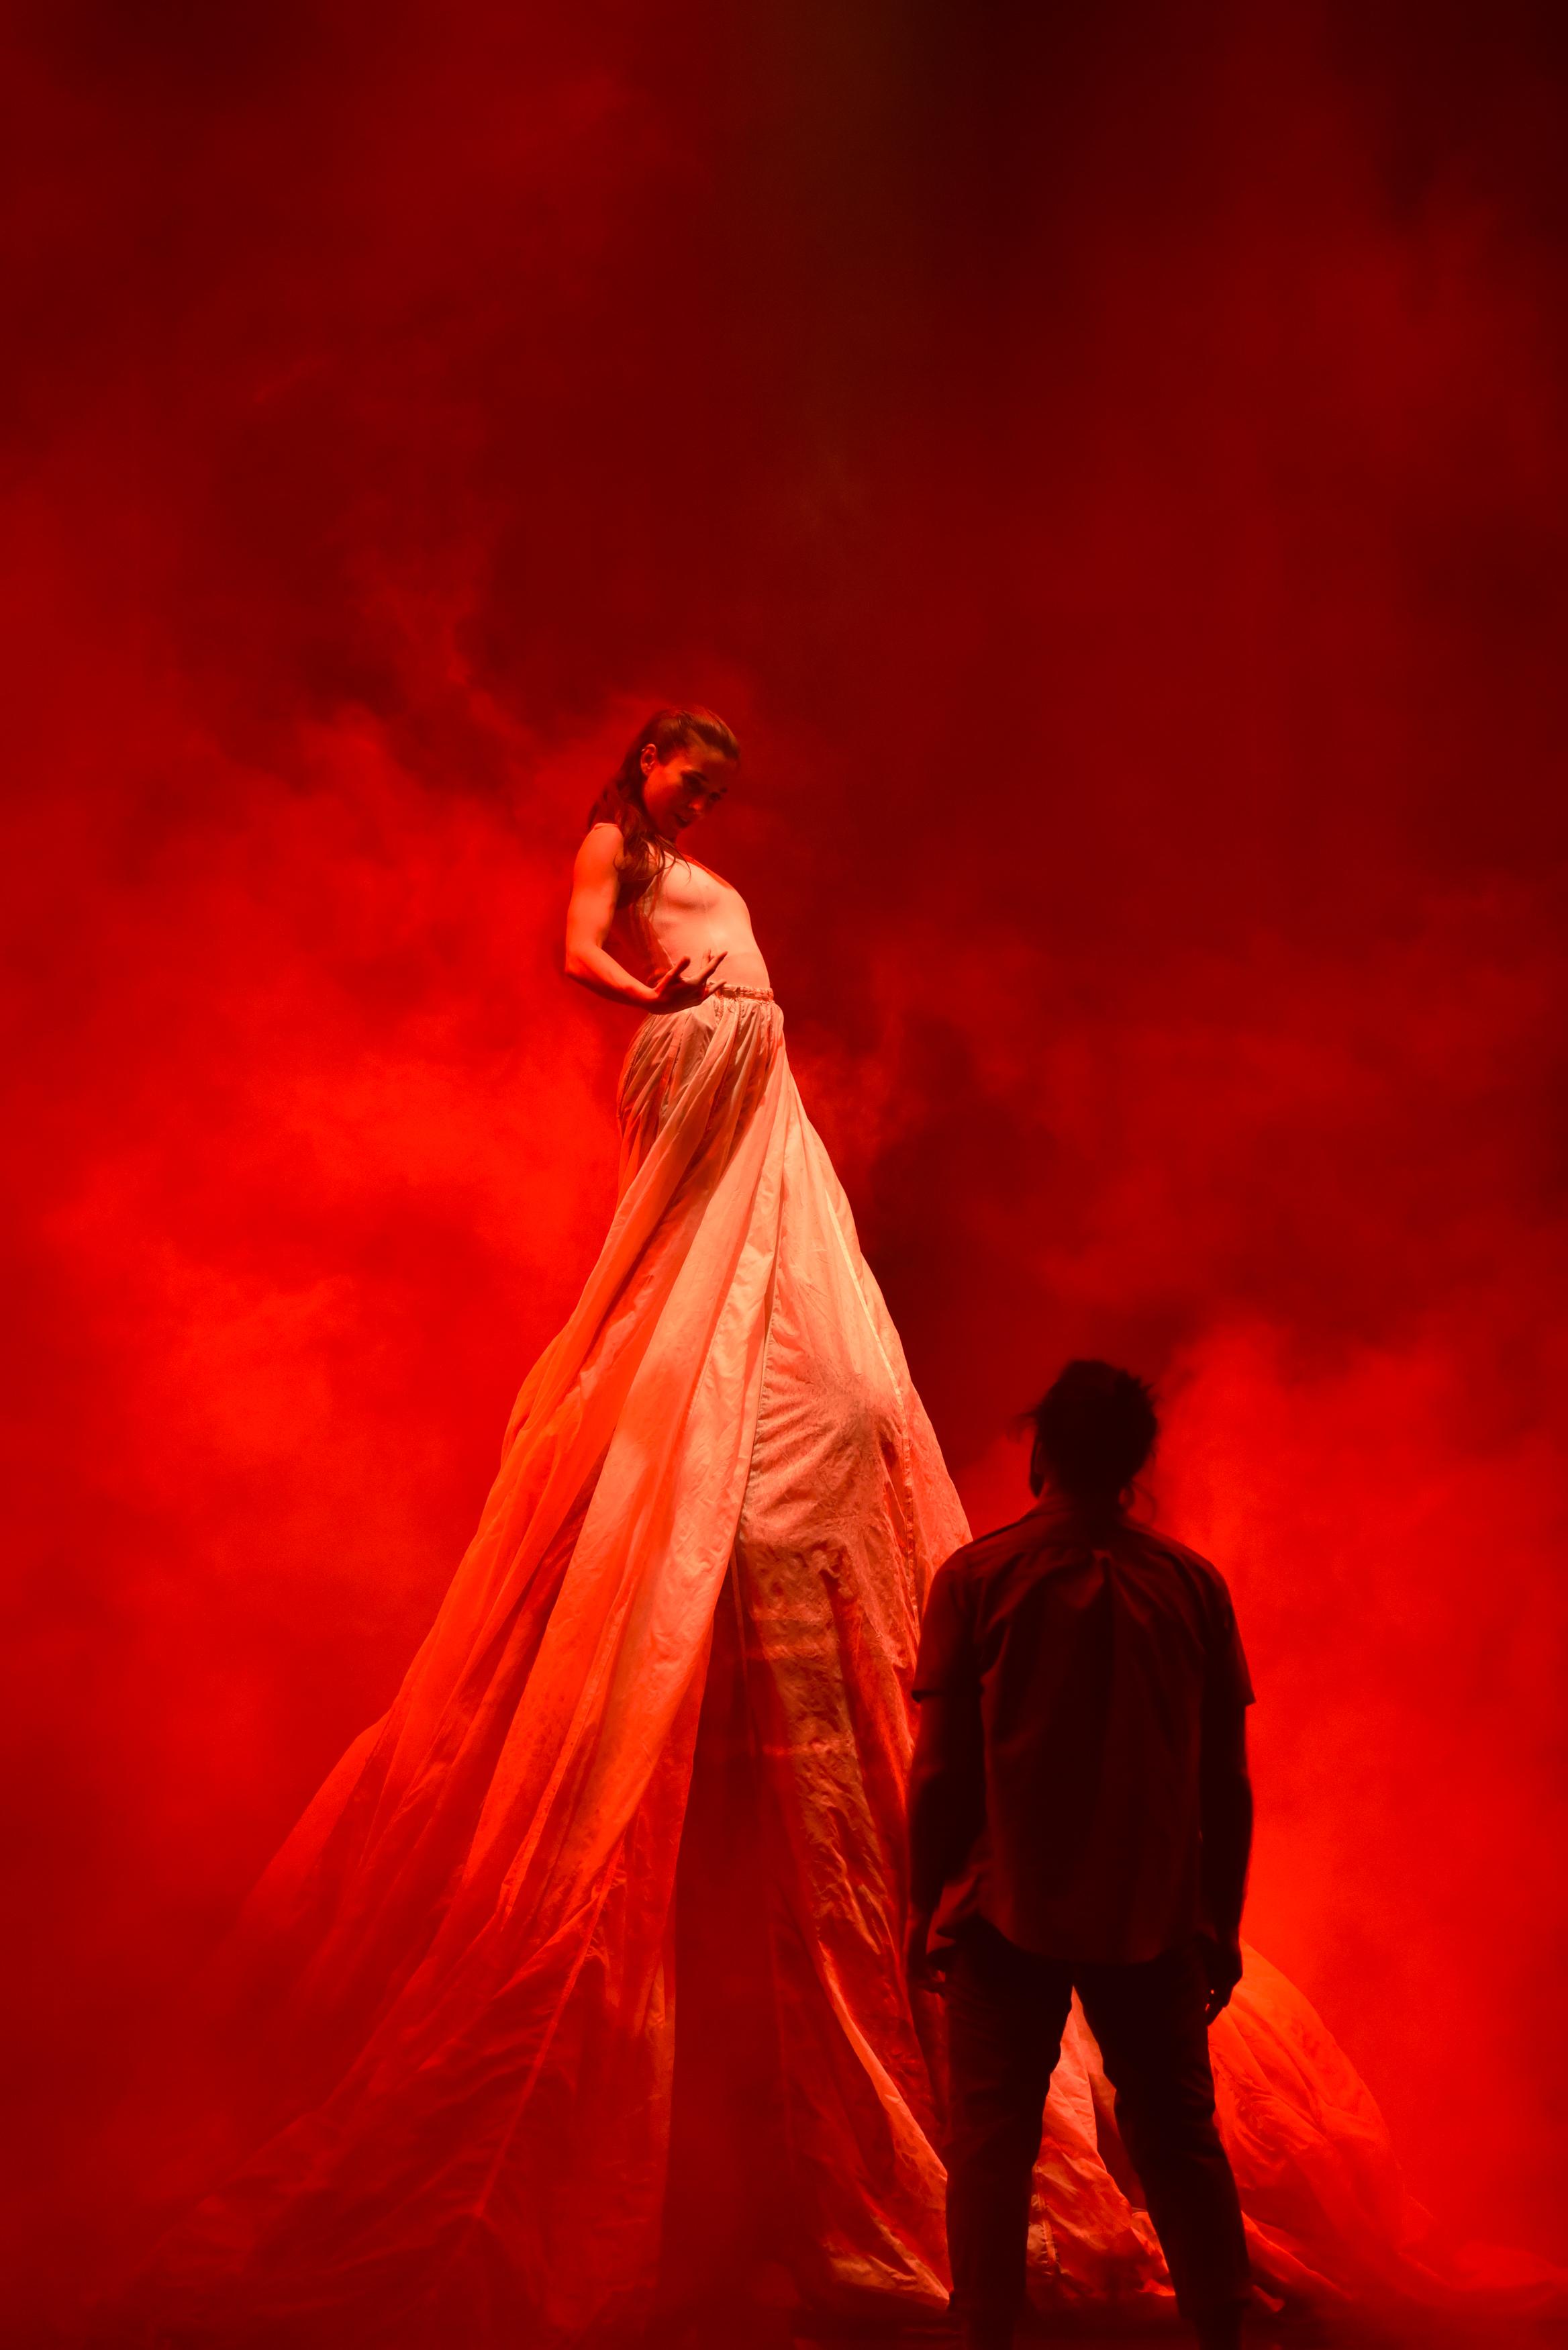 Homme de dos regardant une femme dans une grande robe faisant deux fois sa hauteur, ambiance rougeâtre. 